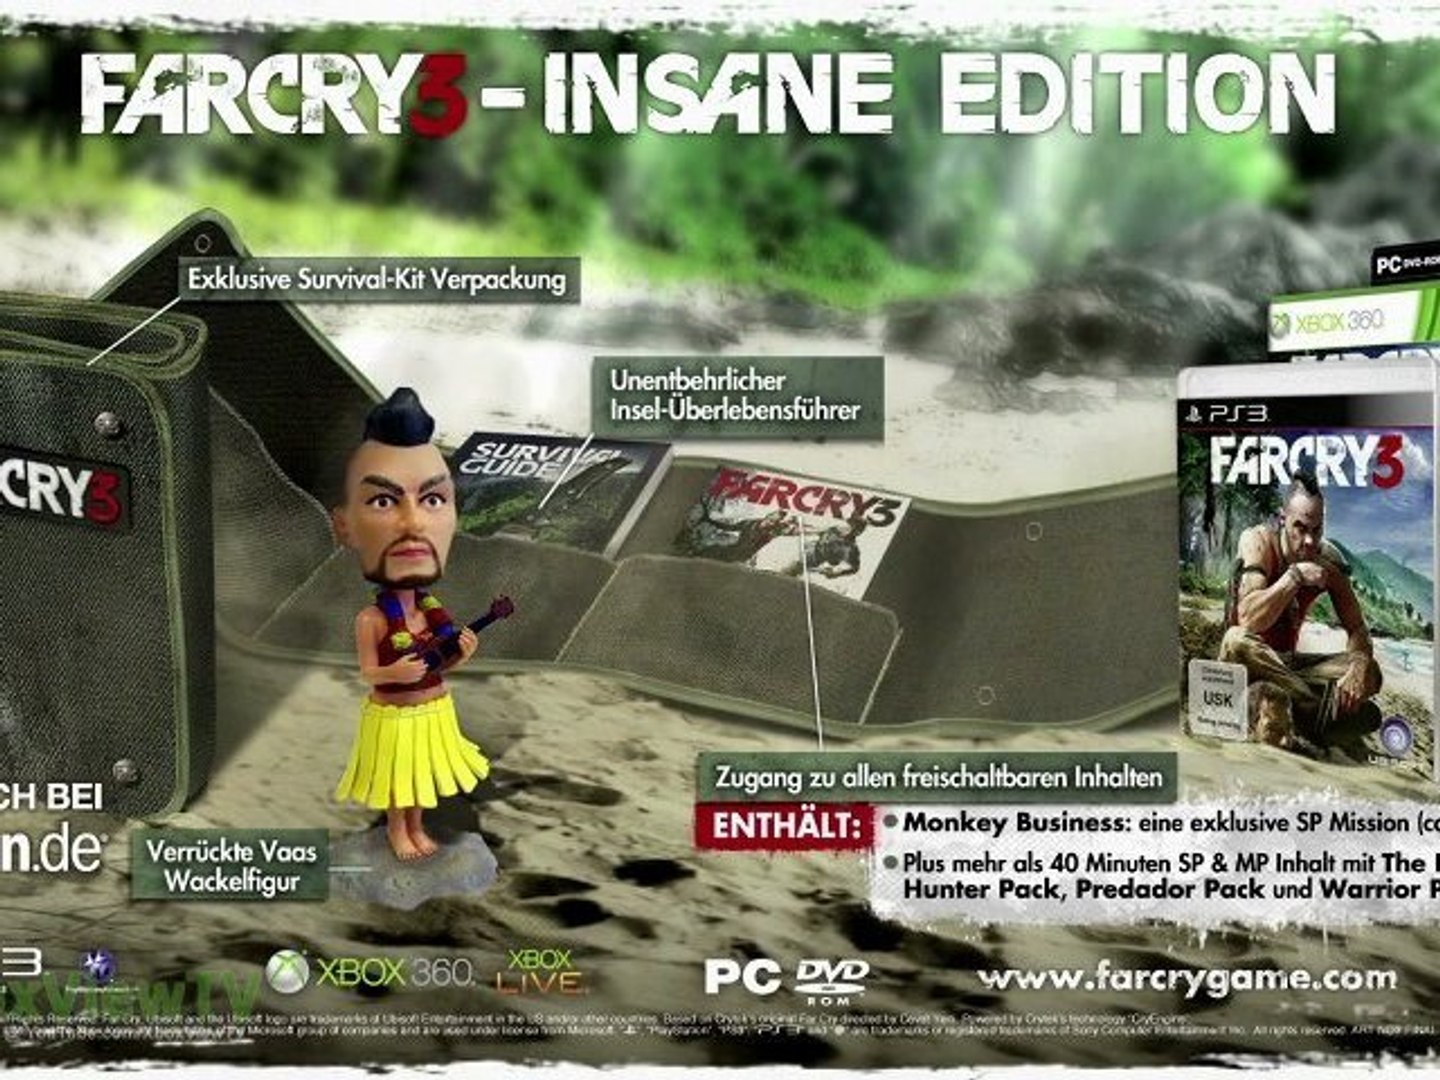 FAR CRY 3 - Insane Edition (Deutsche Untertitel) 2012